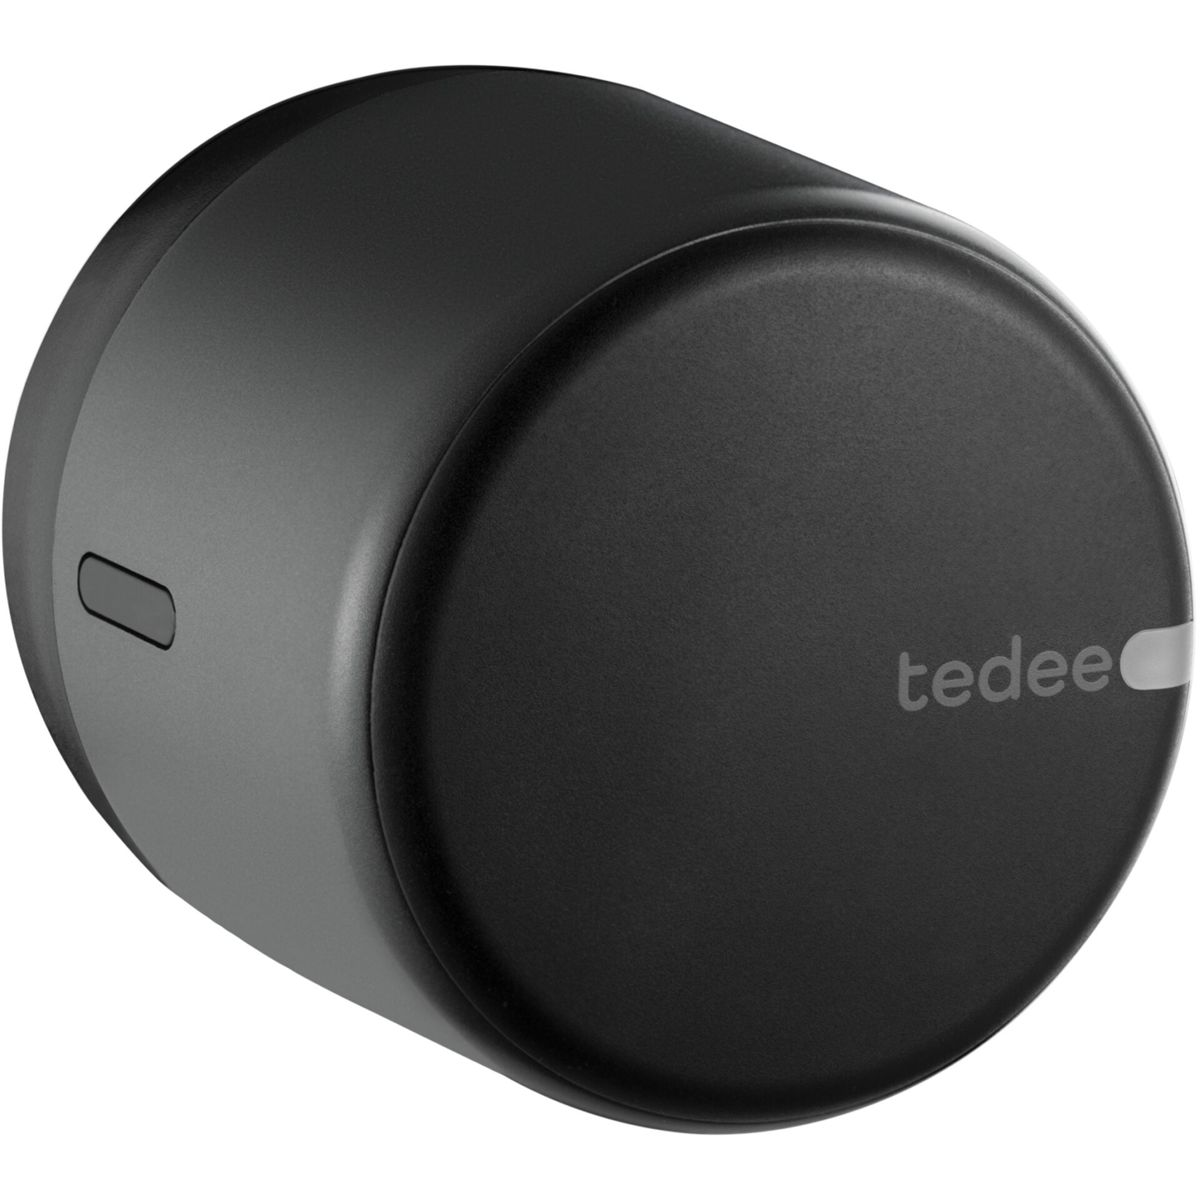 TEDEE Lock über GO Home Smart-Home-Systeme Fibaro, Integration und Web-API, in schwarz und Google silber Amazon / weiß Funk-Zutrittskontrolle, Alexa, Loxone weitere